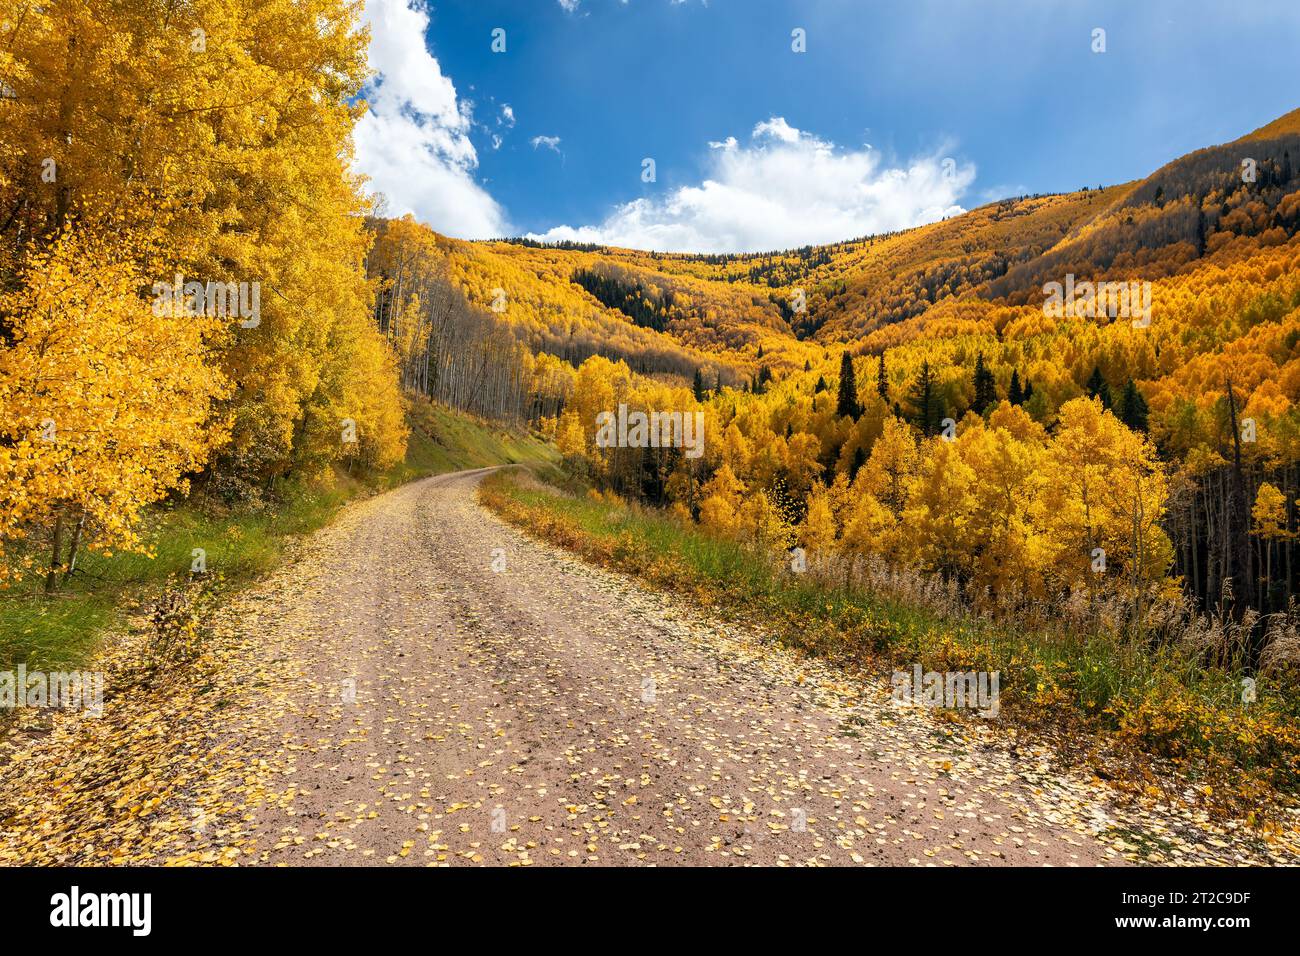 A dirt road winding through autumn Aspen trees in the San Juan Mountains near Rico, Colorado Stock Photo